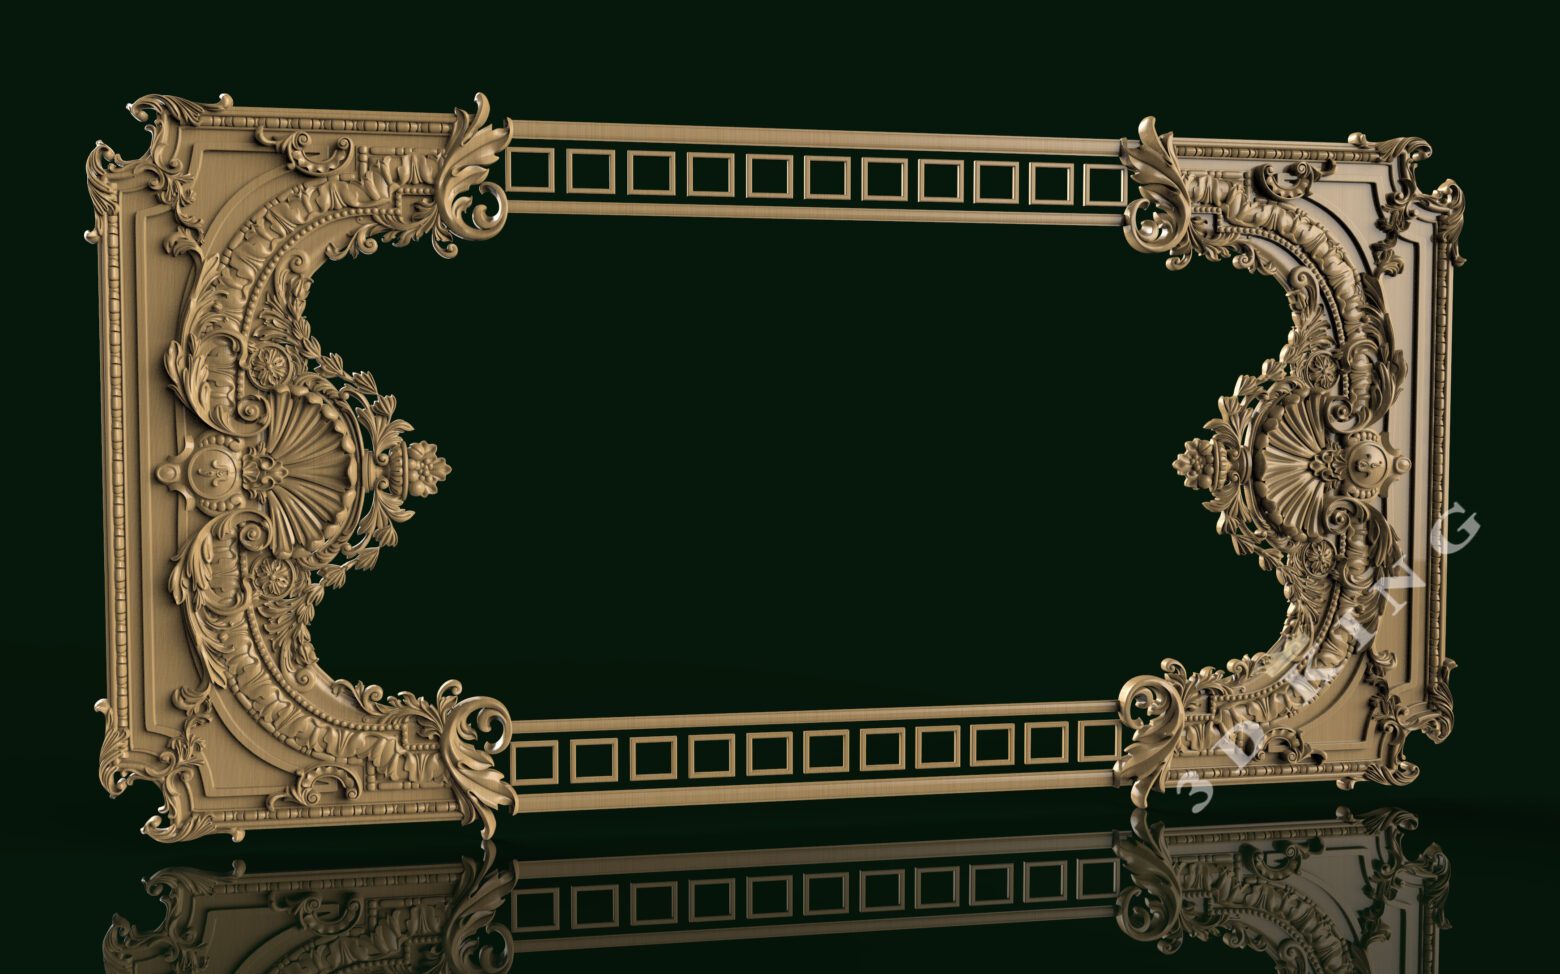 stl modèles 3d 120+ pièces cadres de miroir originaux pour routeur cnc aspire artcam graveur sculpture télécharger